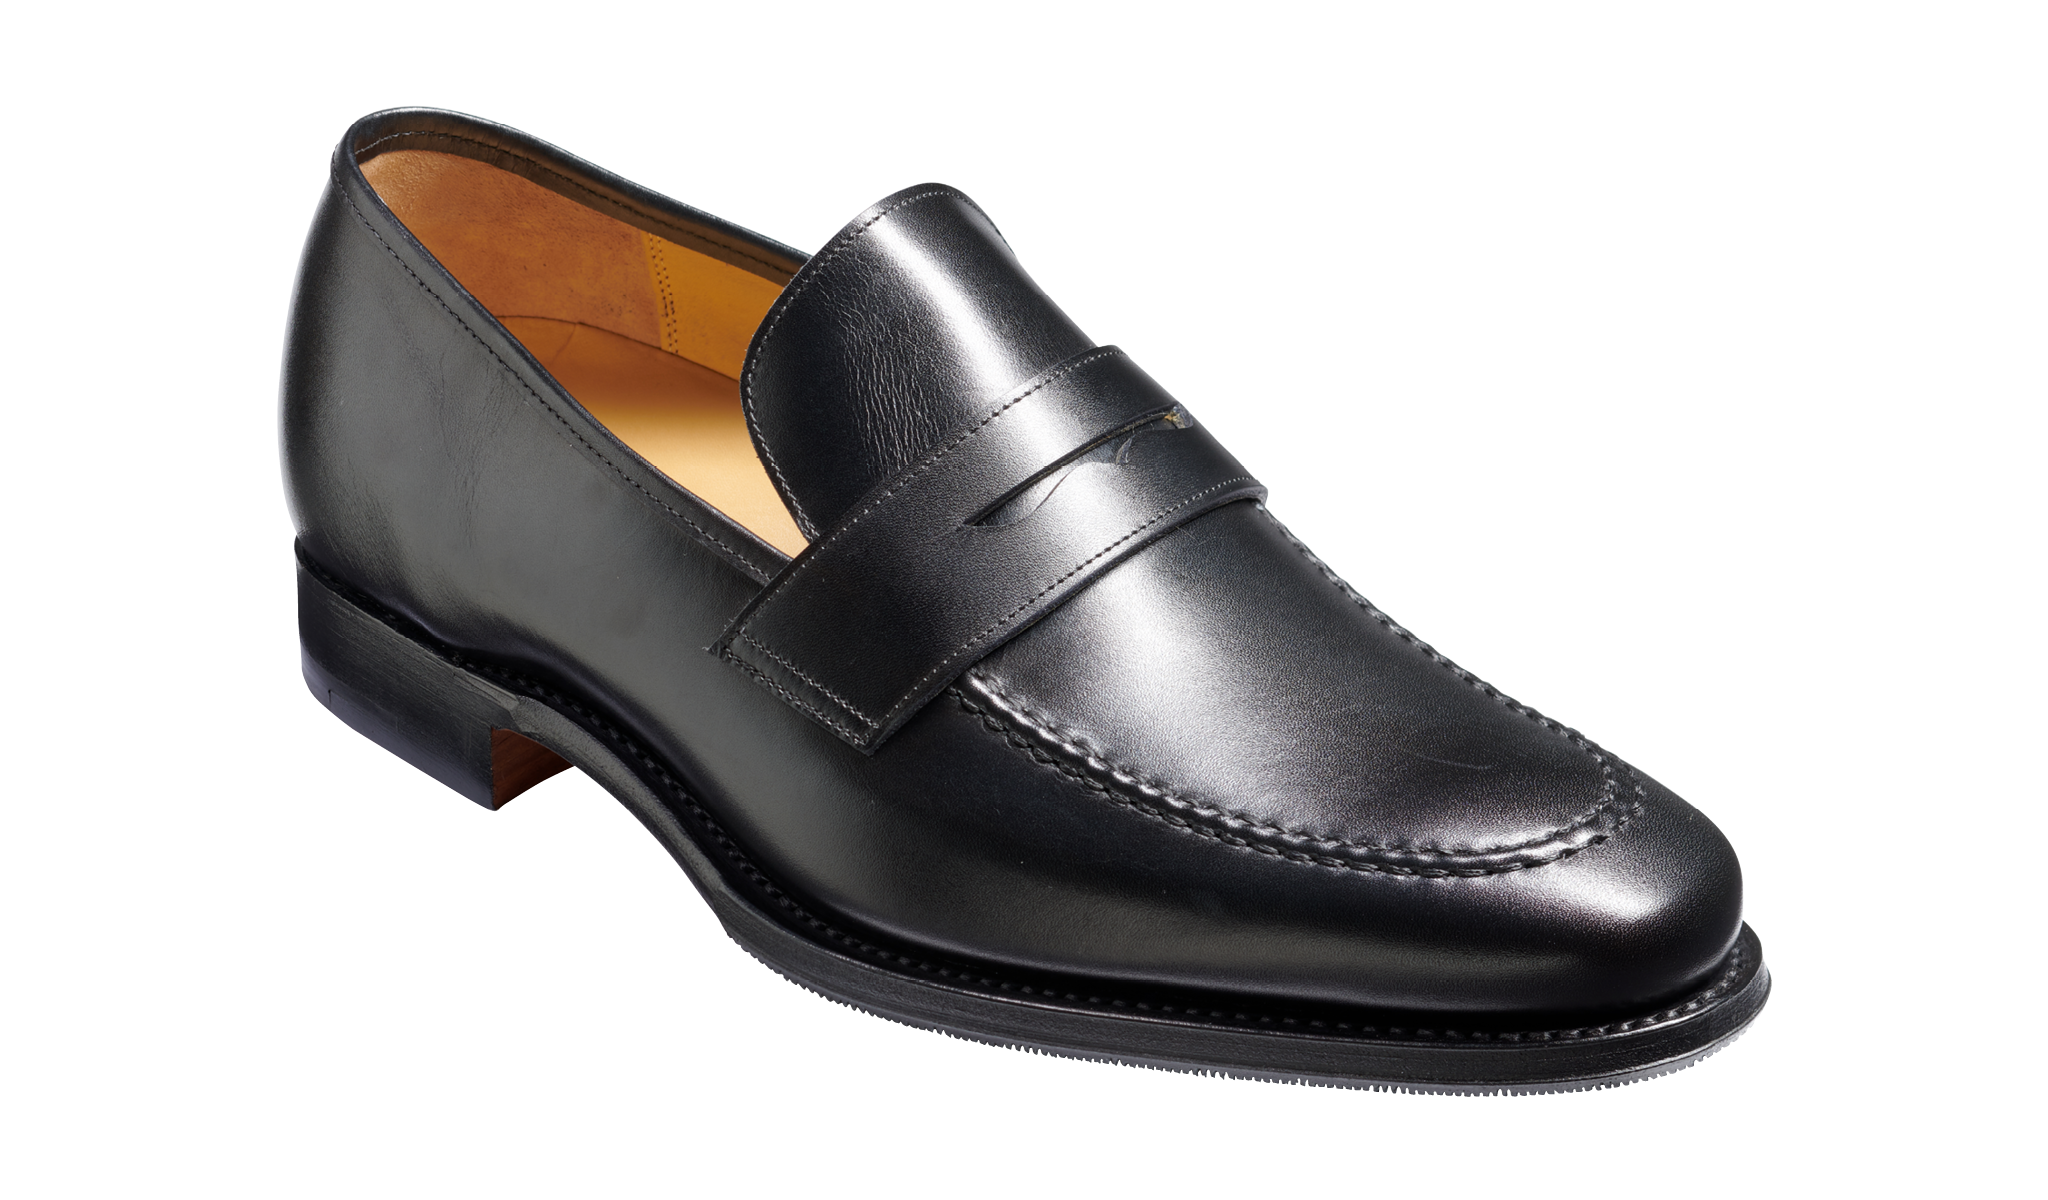 Gates - A men's black loafer by Barker Shoes